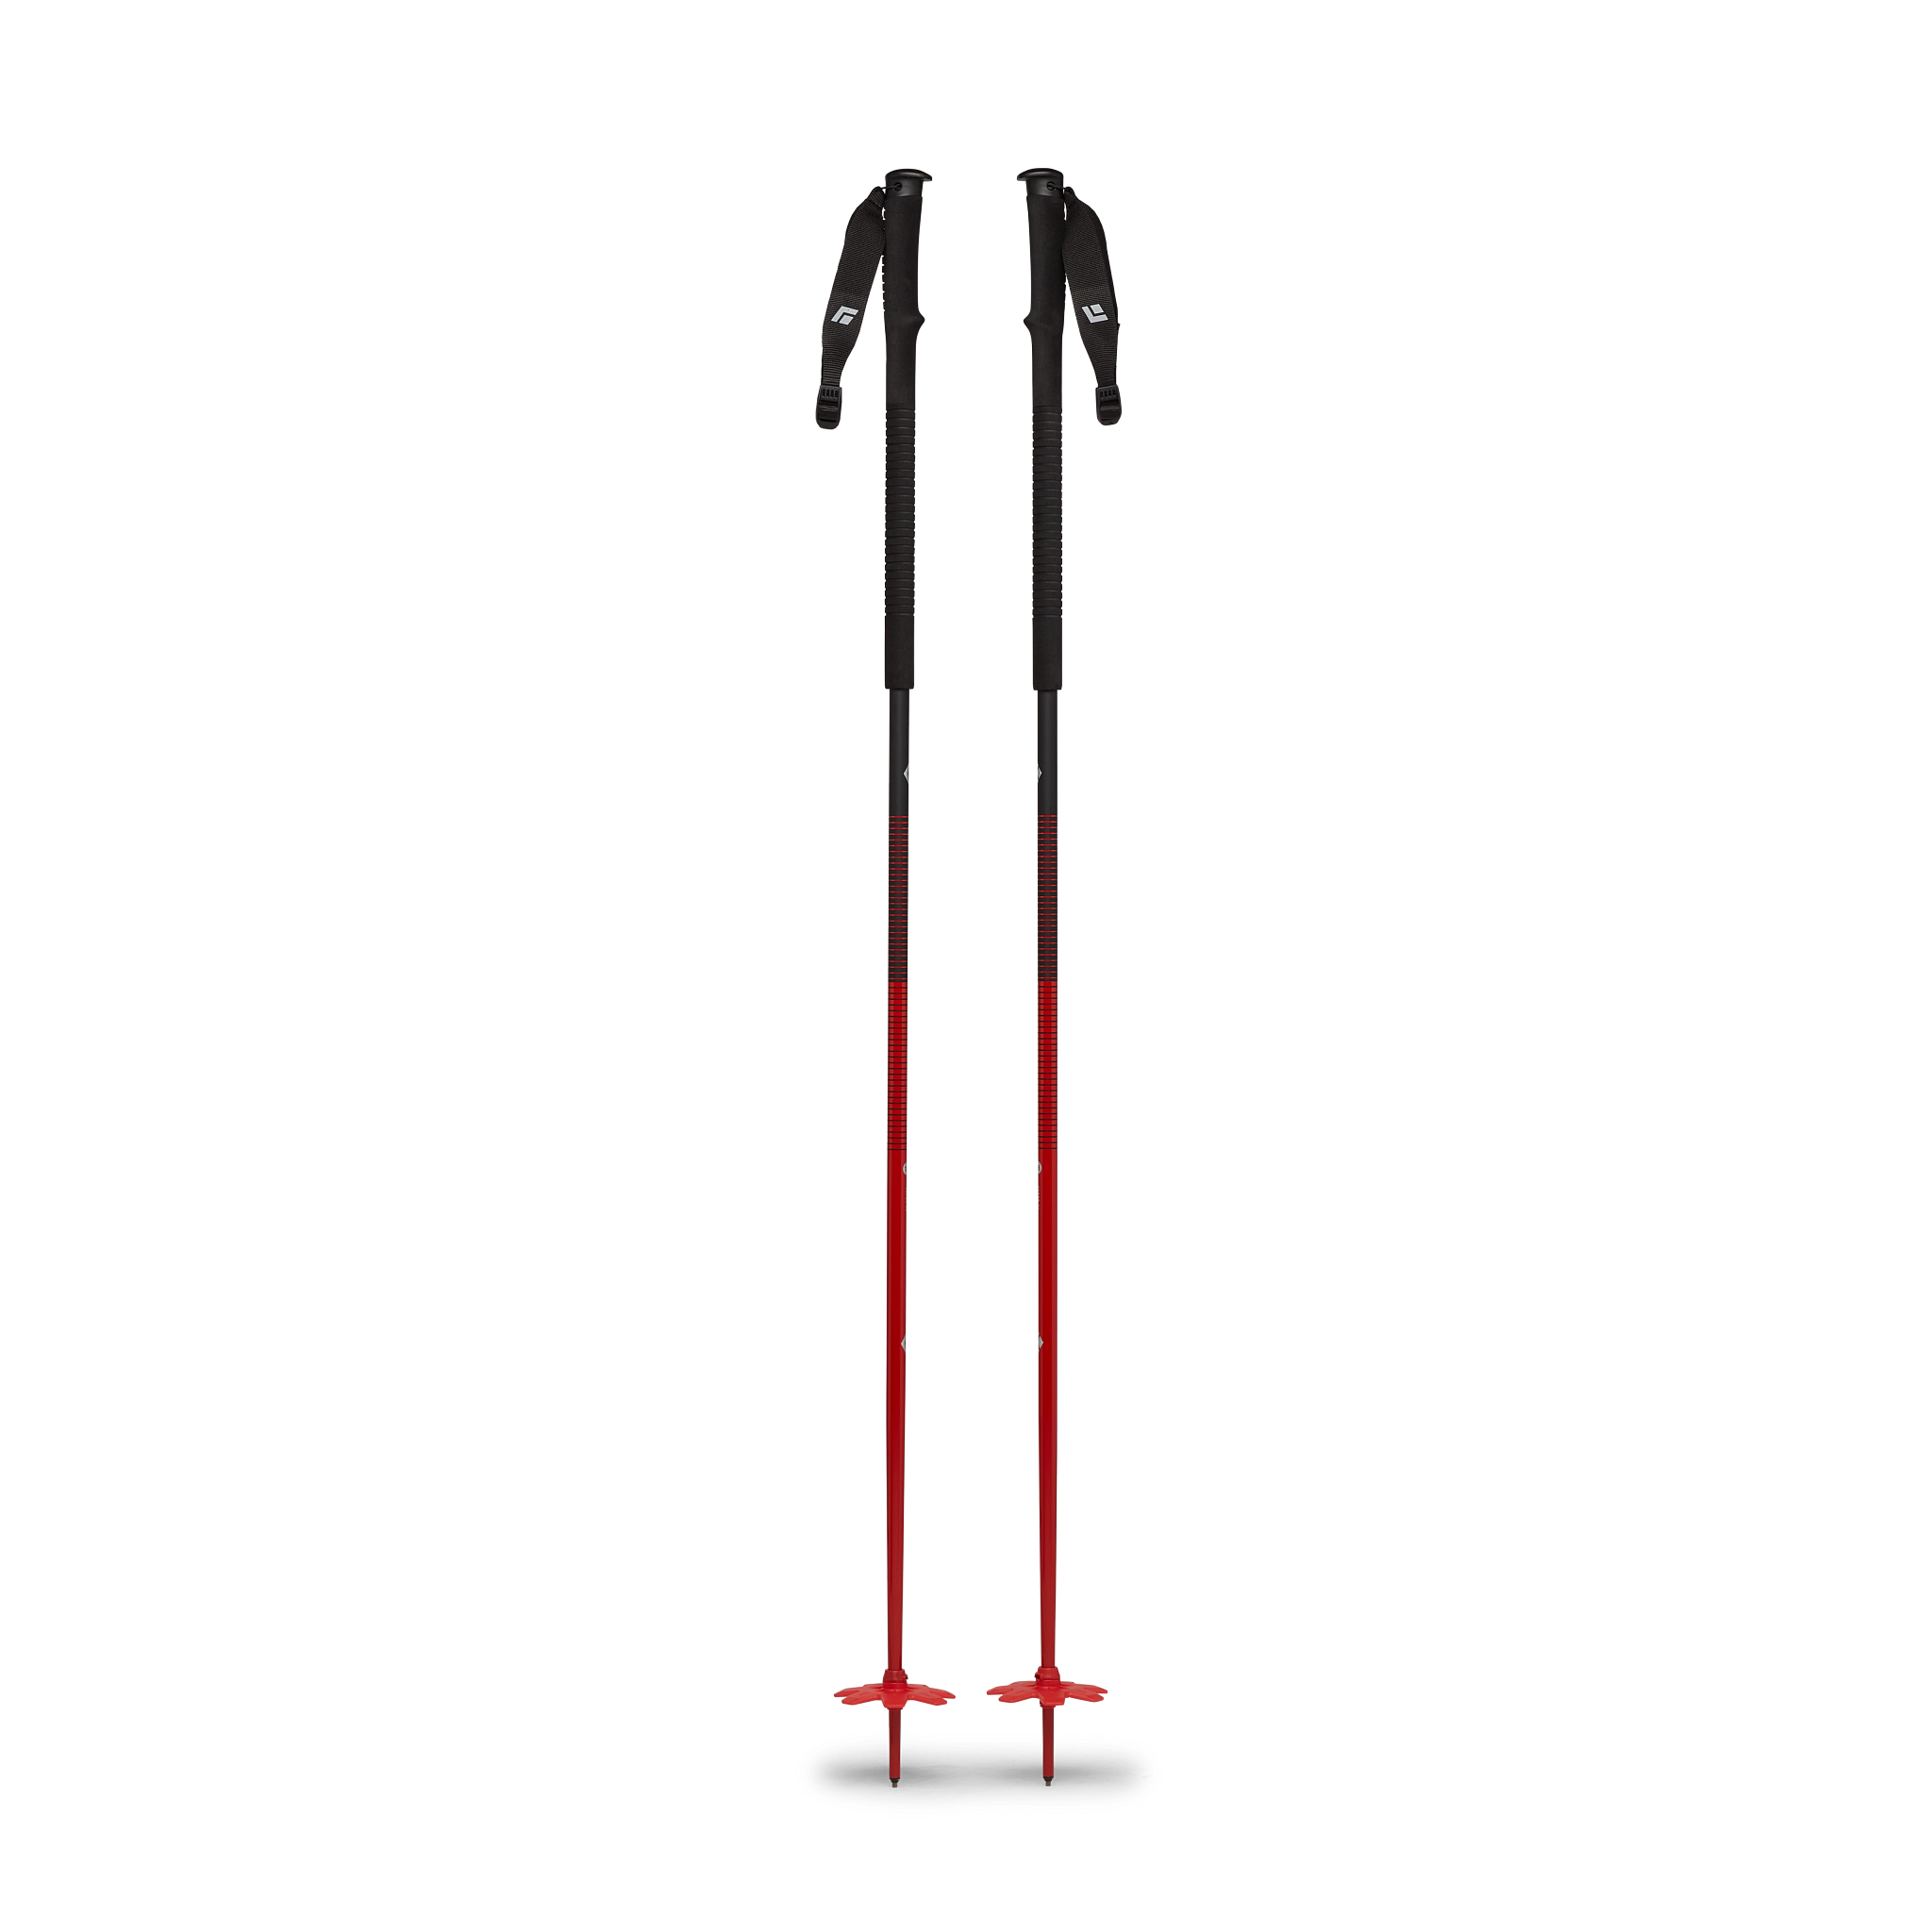 Black Diamond Equipment Vapor AL Ski Poles Size 115 cm, in Octane